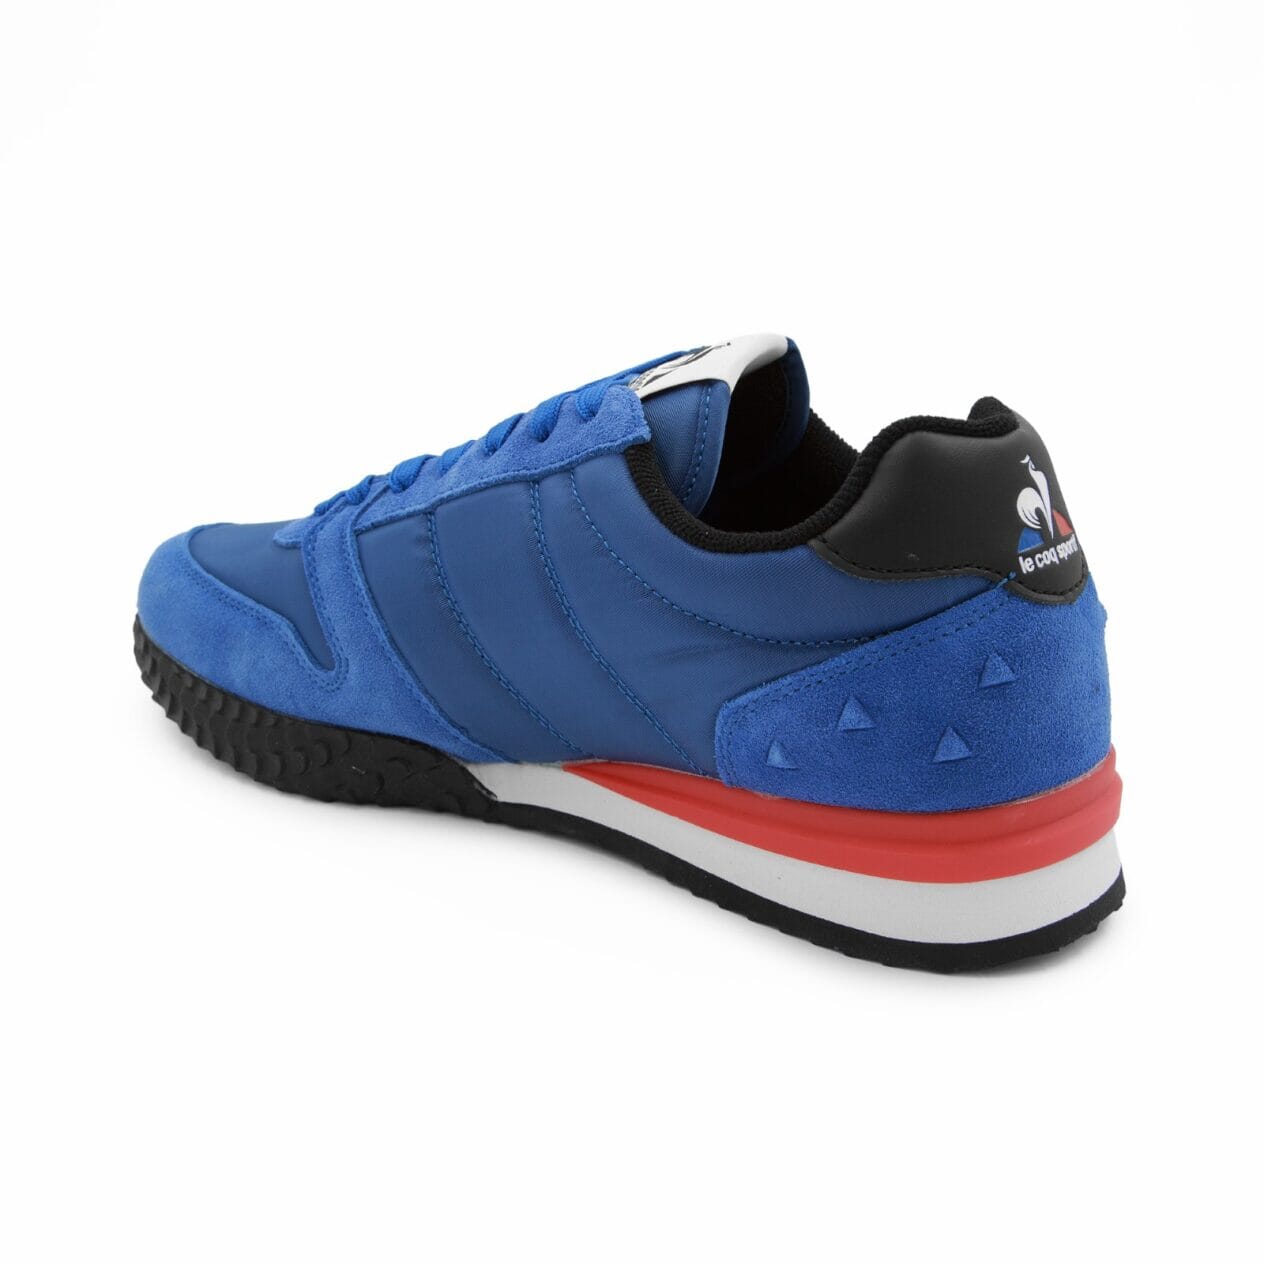 Mens Veloce 2 Cobalt/Optical White/Red Sneaker